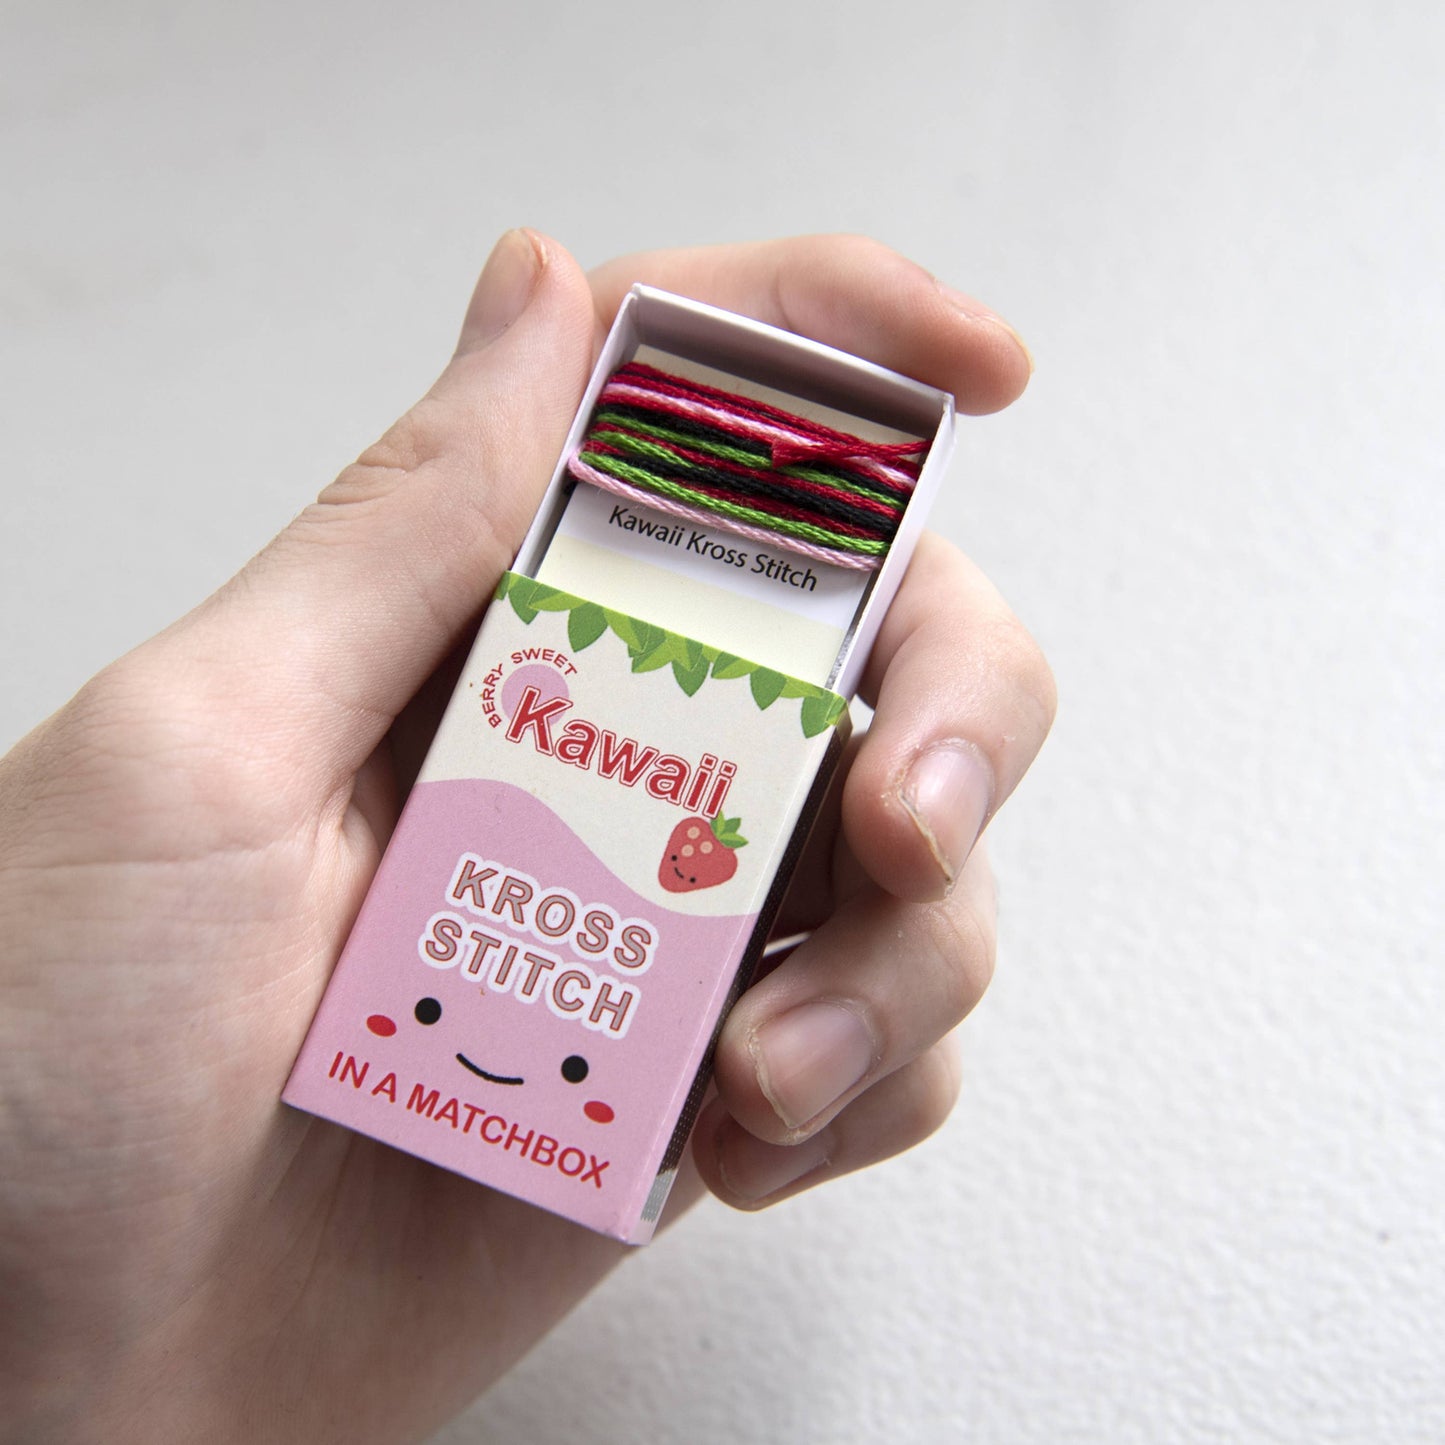 Kawaii Strawberry Mini Cross Stitch Kit In A Matchbox